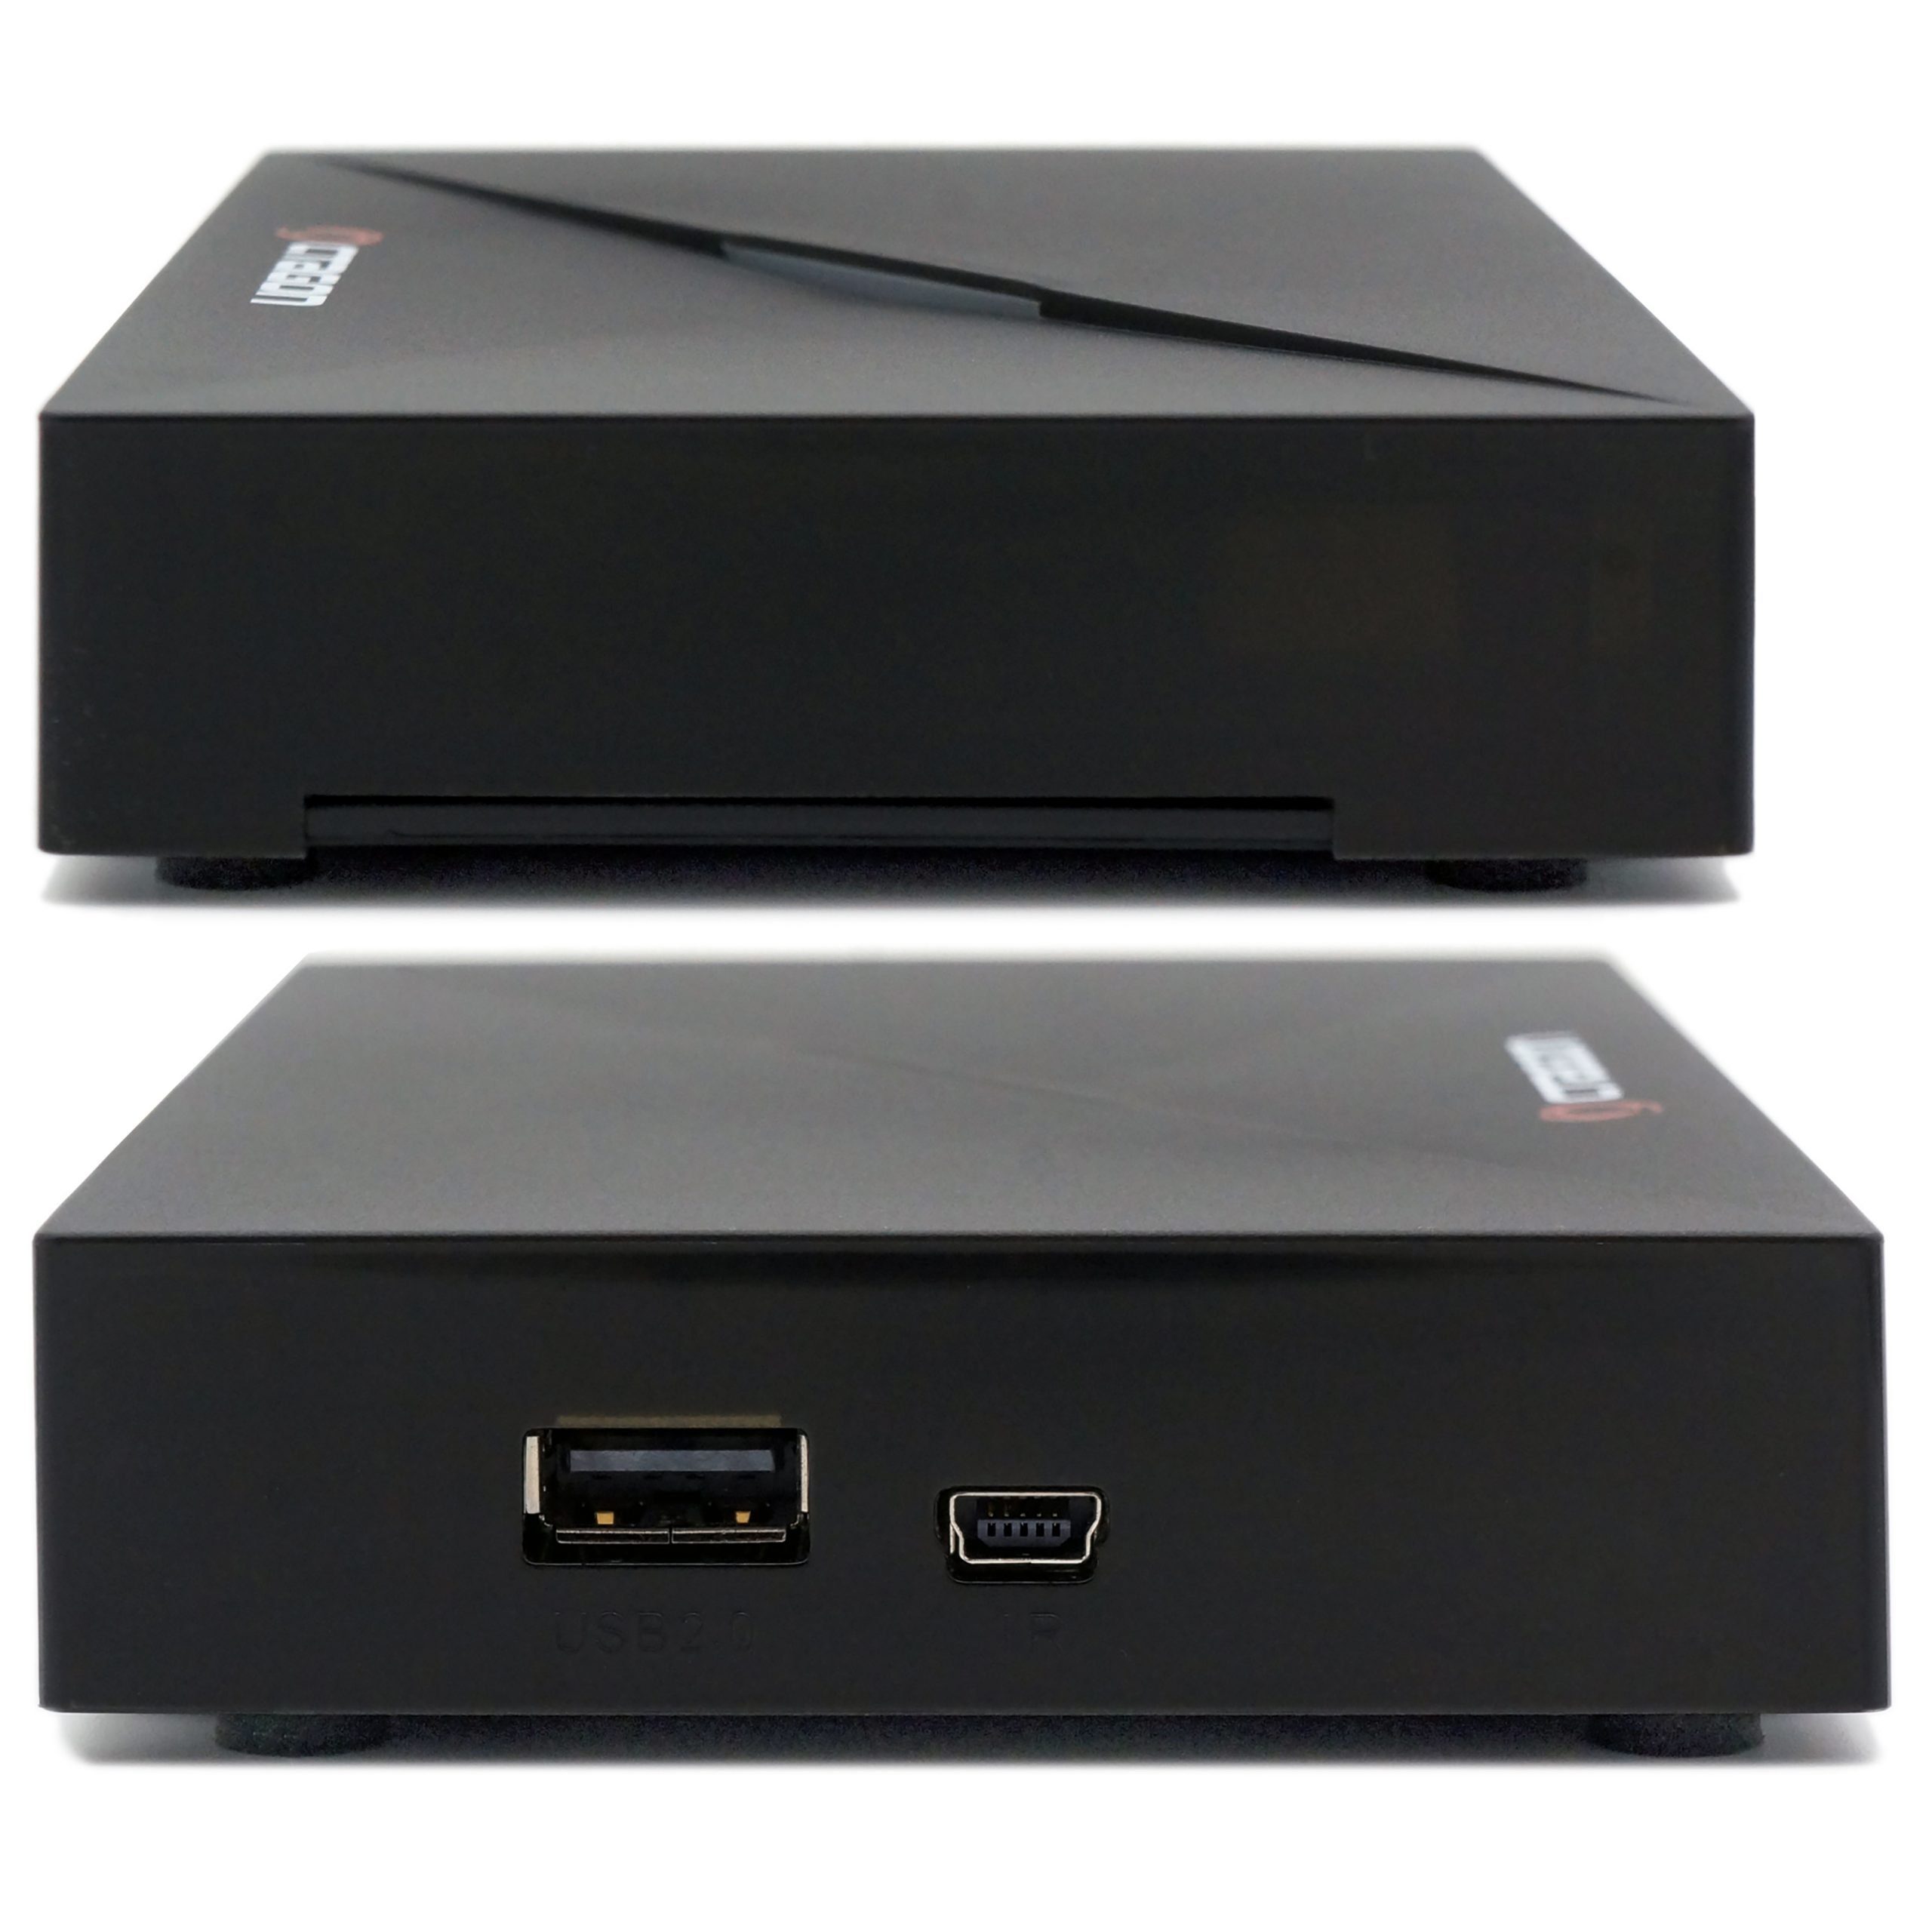 IP SX888 Box Set-Top H.265 HEVC V2 UHD IPTV 4K Streaming-Box OCTAGON